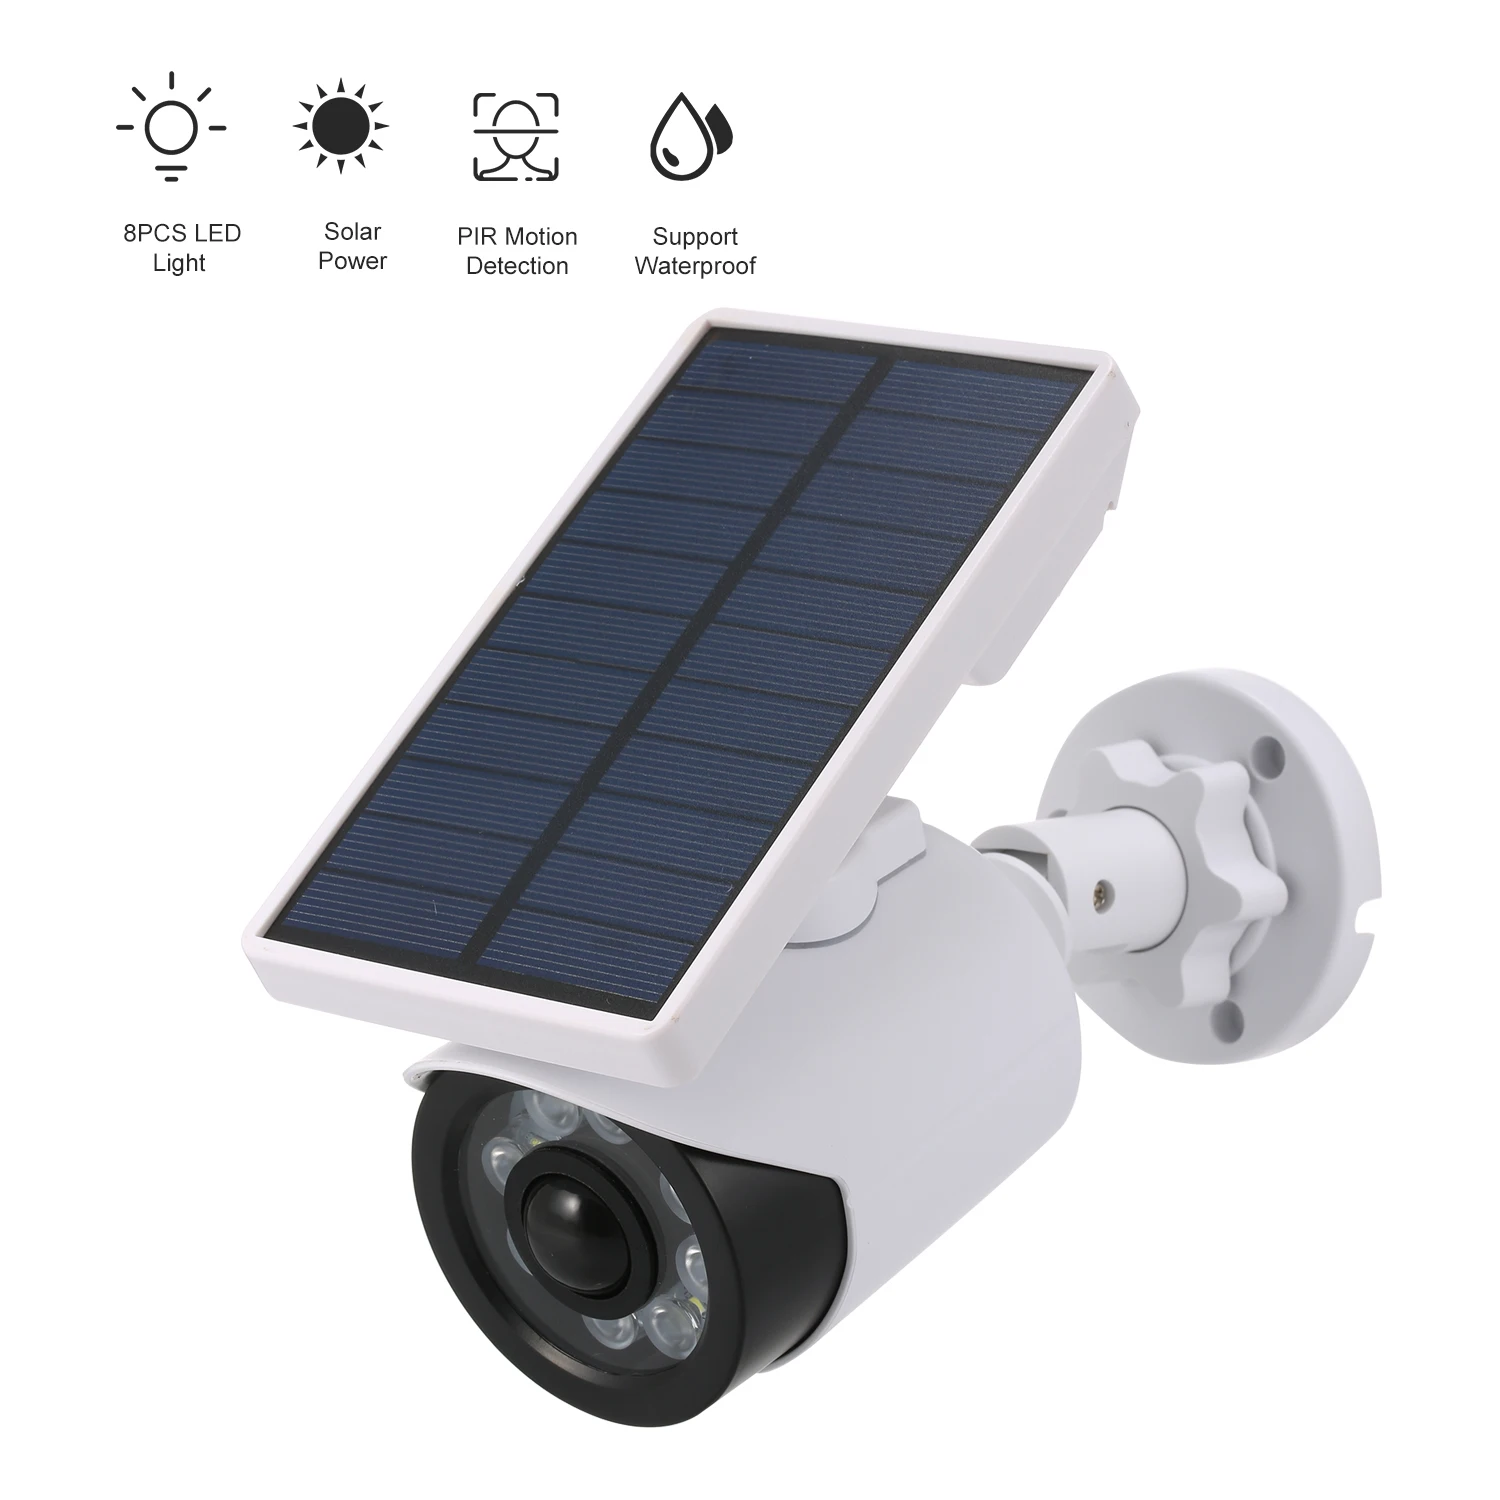 Солнечный светодиодный светильник, манекен, камера безопасности IP66, водонепроницаемая, с PIR датчиком движения, для наружного видеонаблюдения, Имитация камеры наблюдения